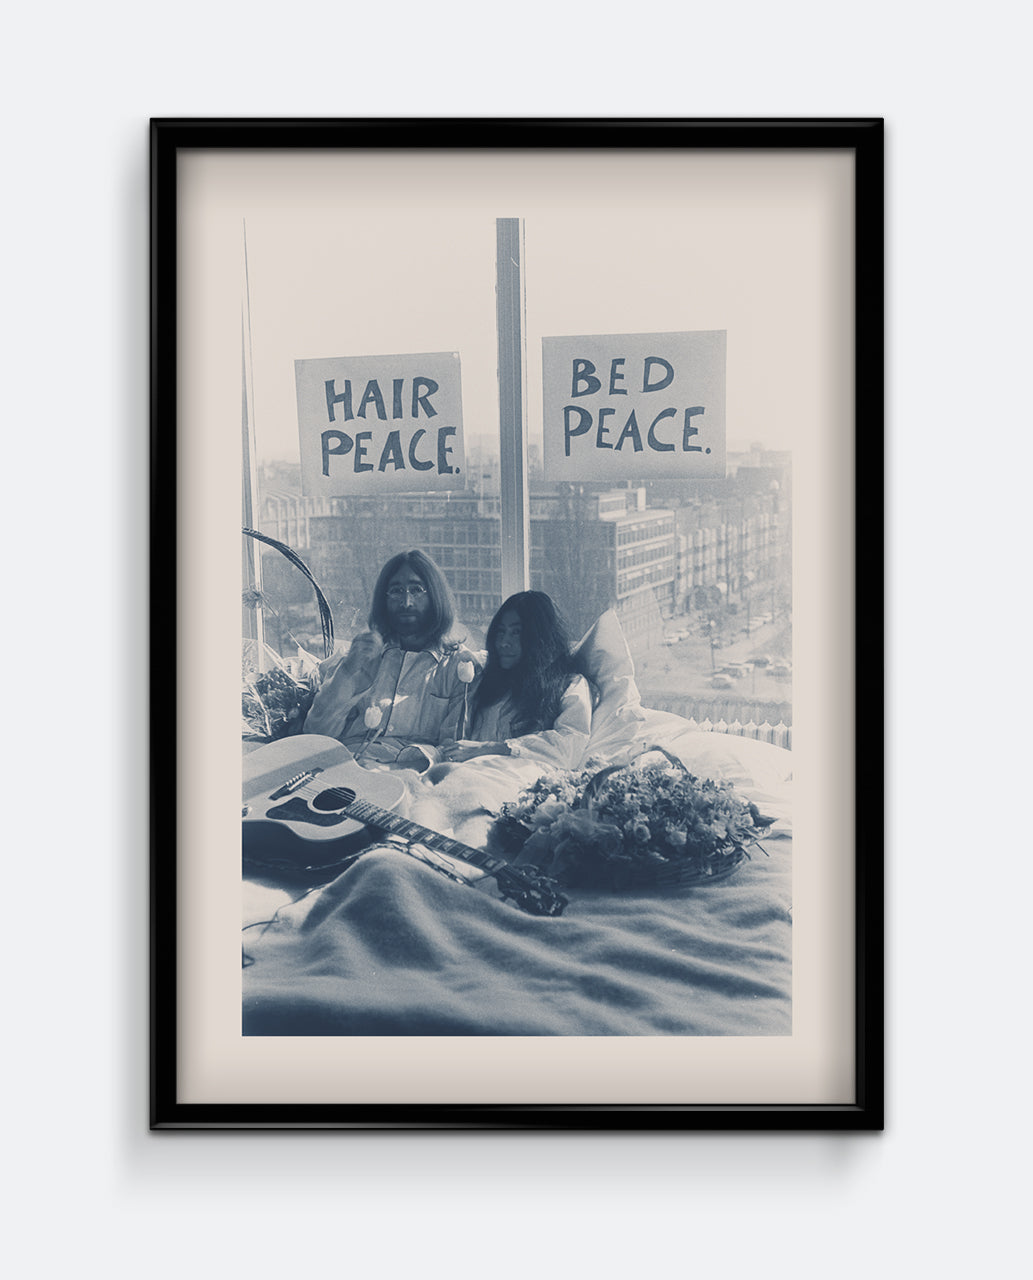 Hair Peace. Bed Peace.